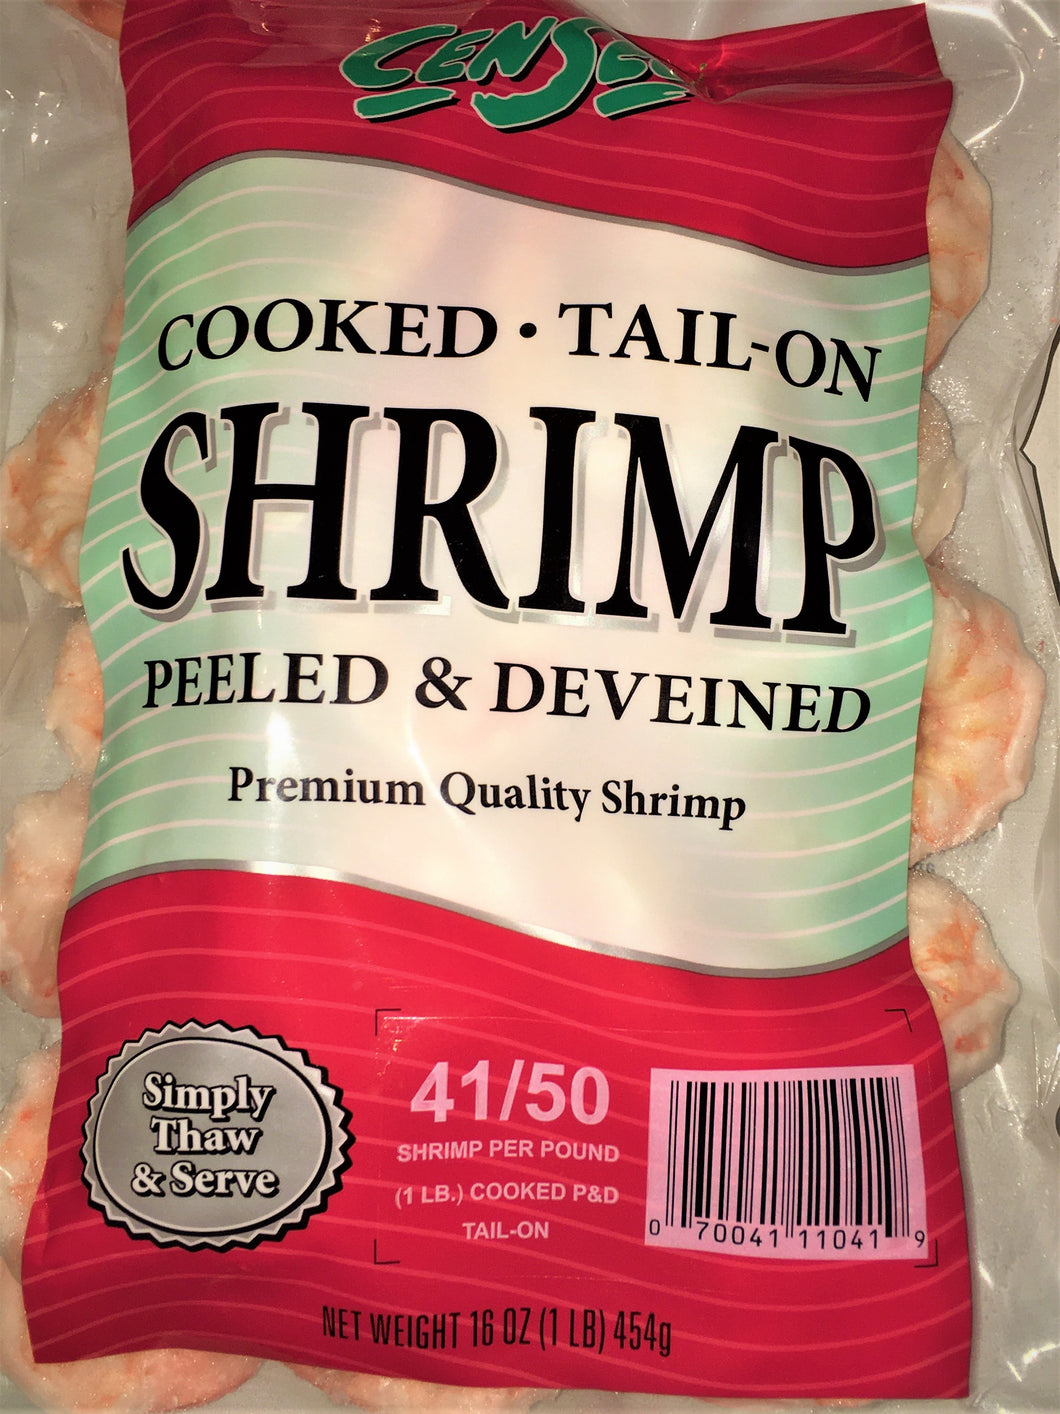 Cooked Shrimp 41/50 ct 1 lb Bag $5.99